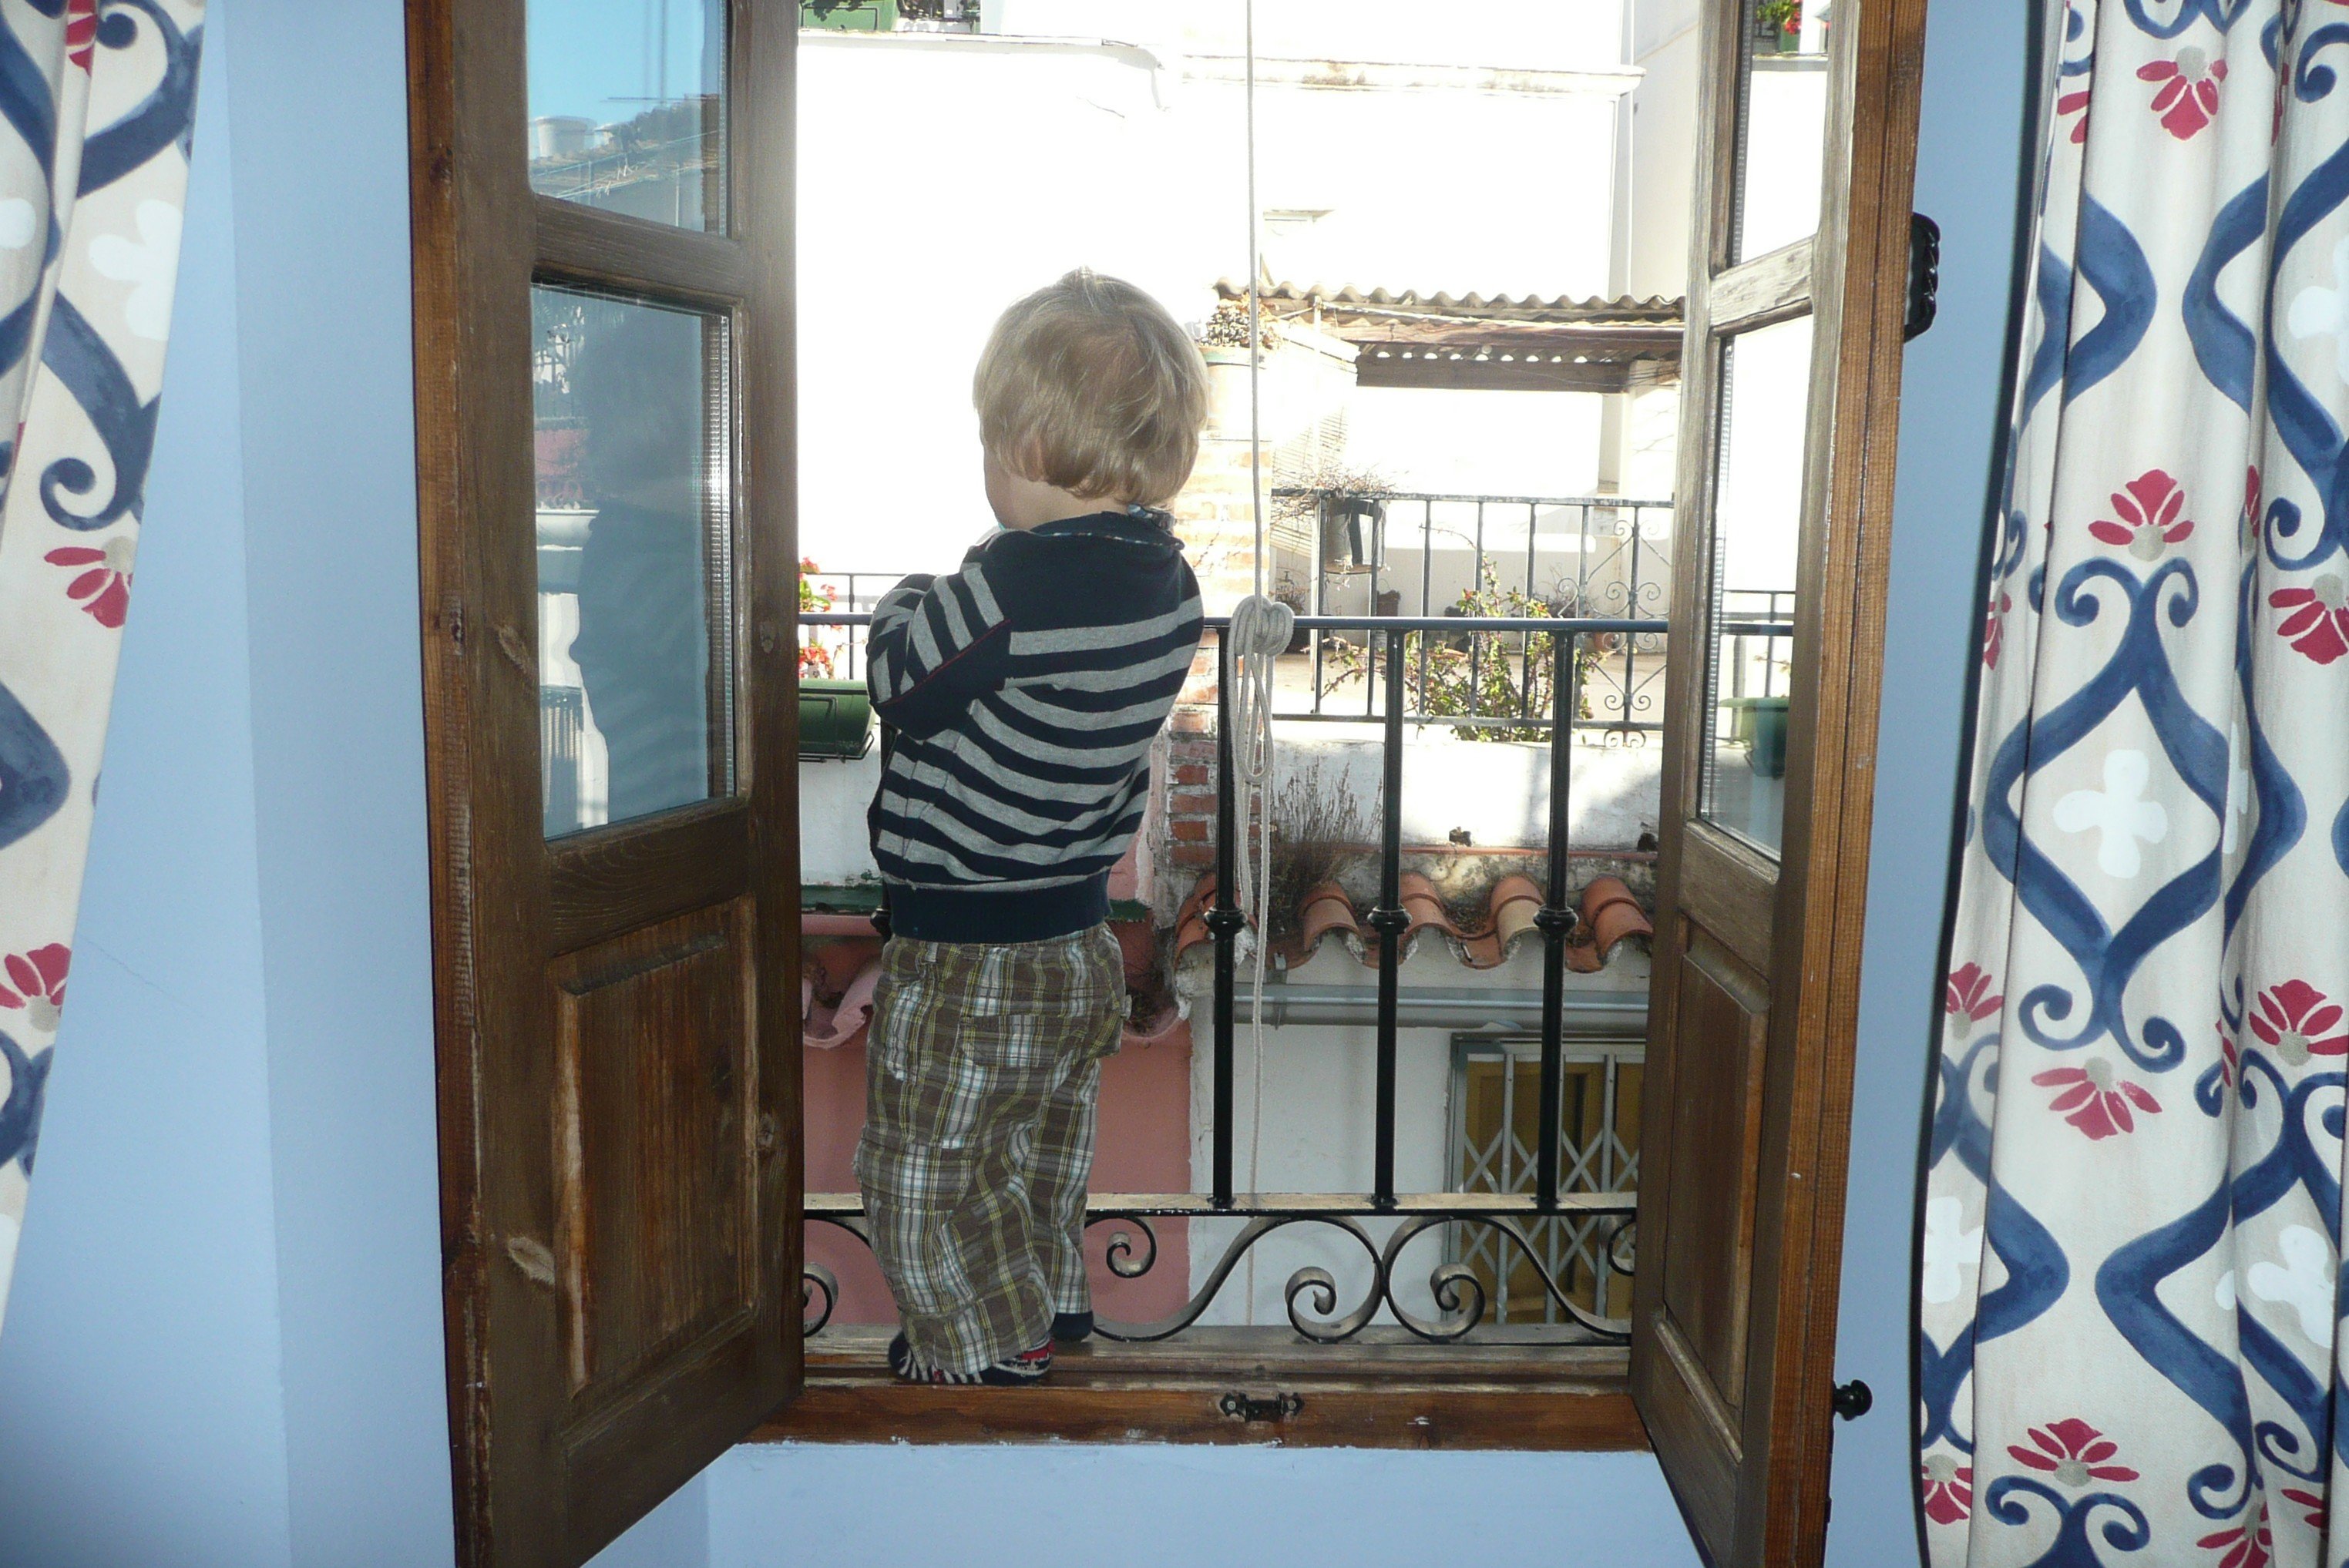 Kind an Balkonbrüstung: Ist der Balkon kindersicher?